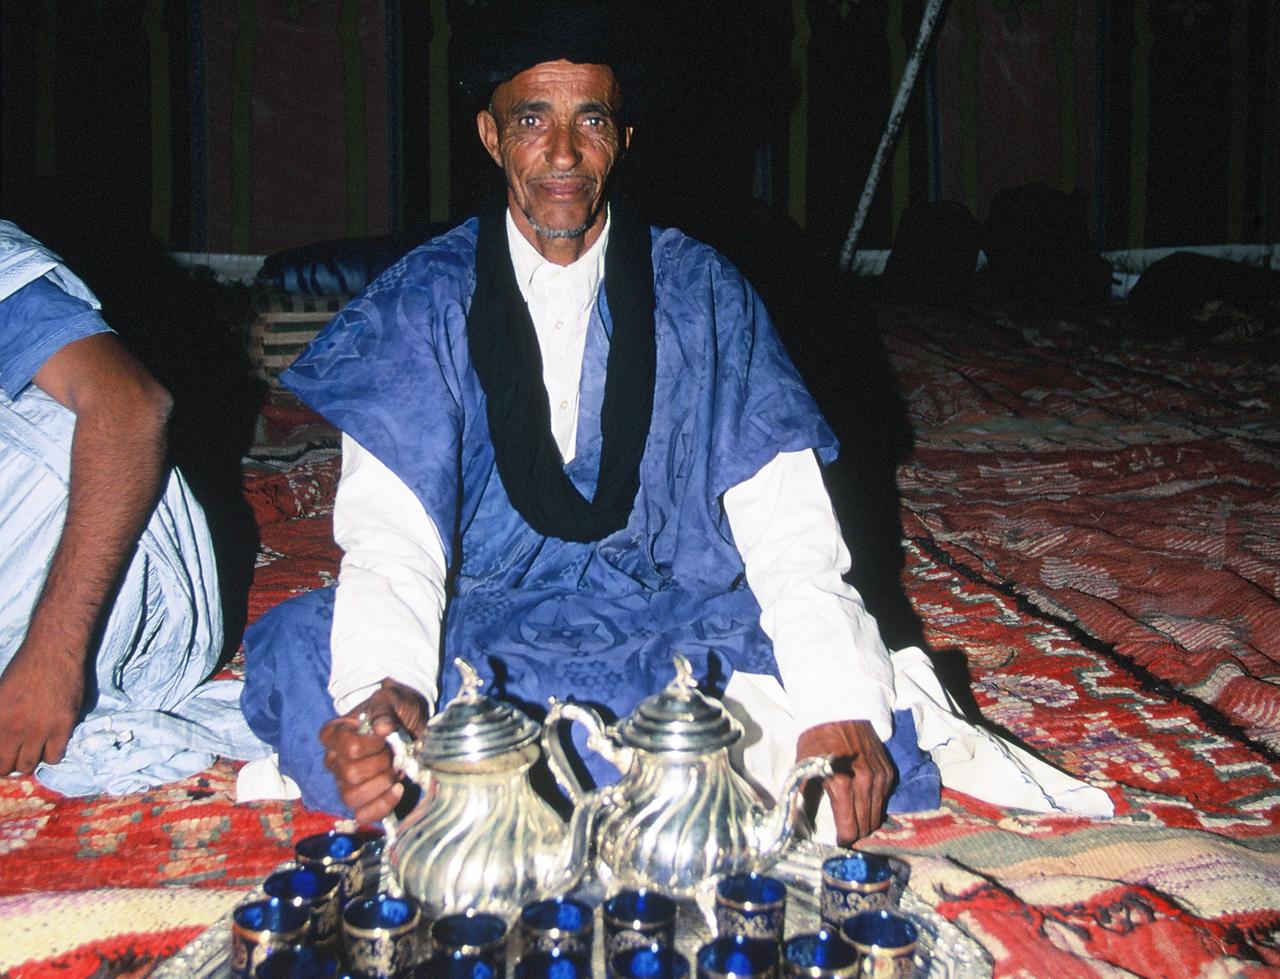 Marokkanische Teezeremonie bei Nomaden in traditionellem Gewand in der Sahara in Marokko.